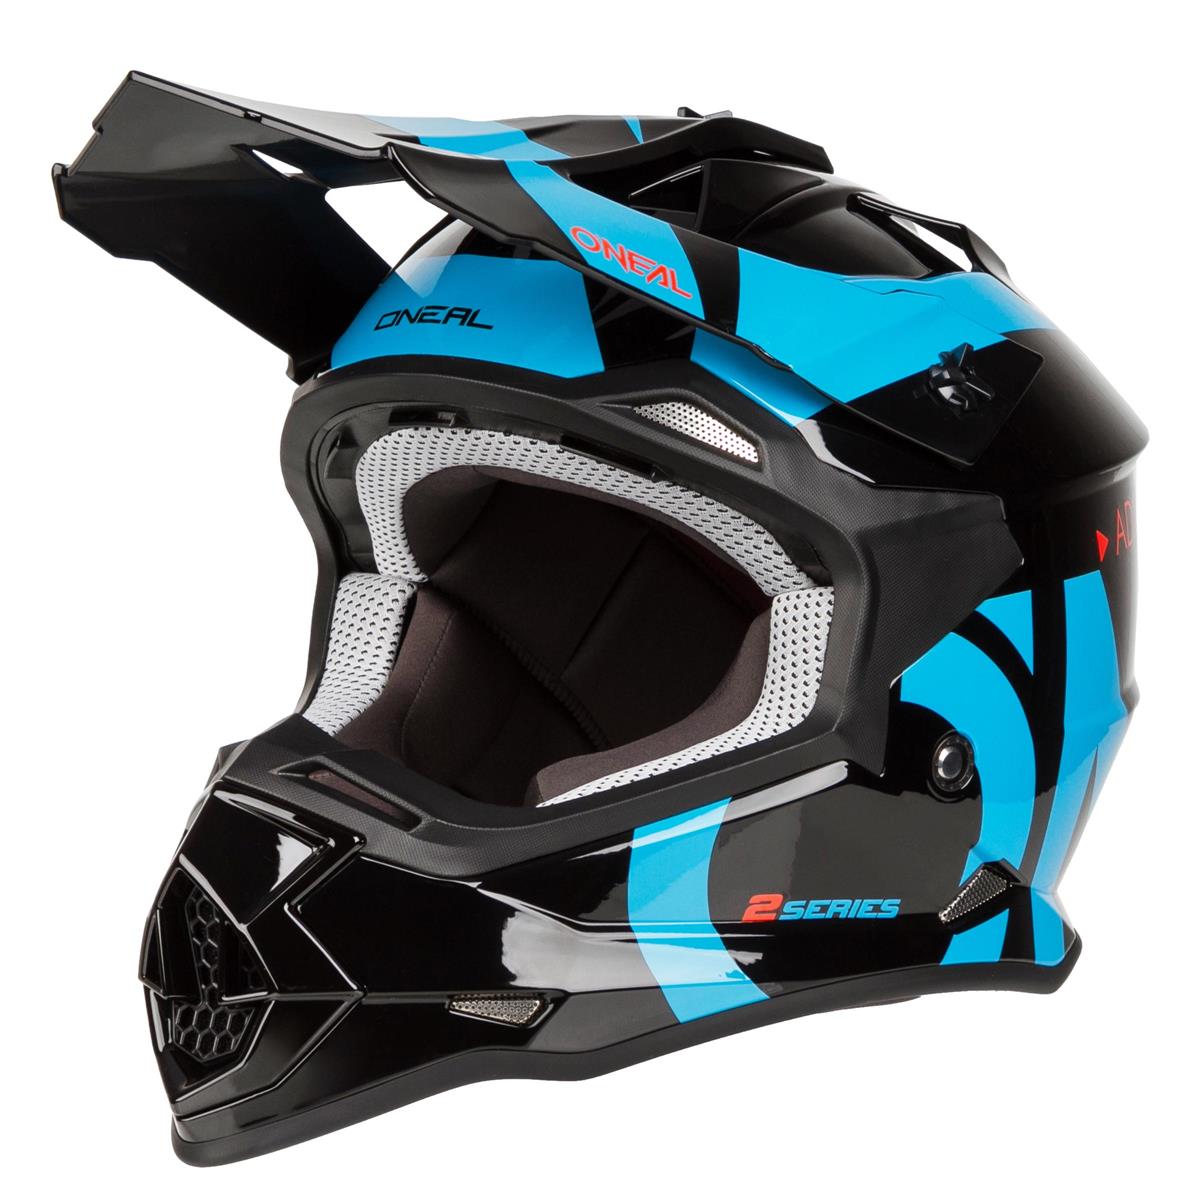 ONeal 2 Series Slick Motocross Enduro MTB Helm schwarz/blau 2020 Oneal